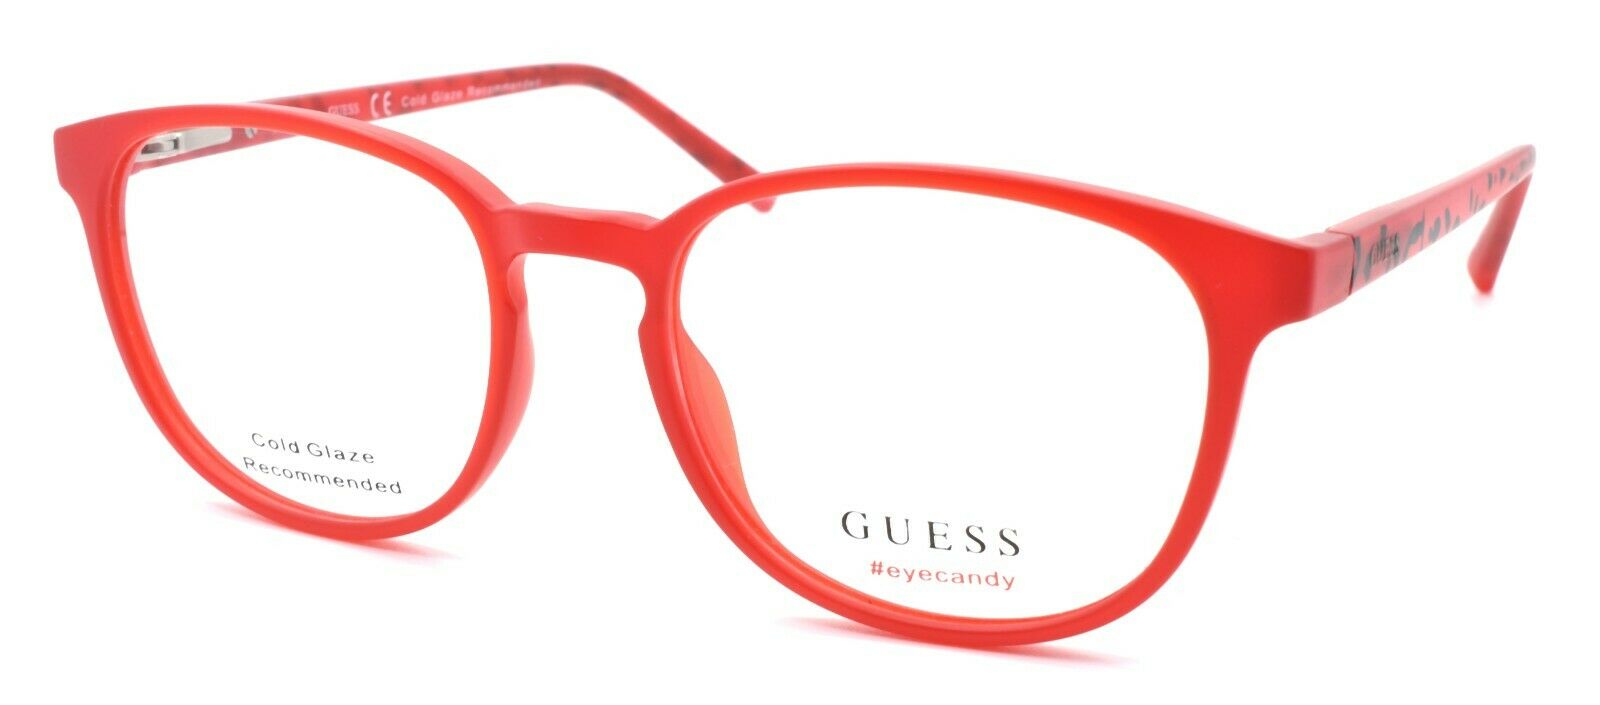 1-GUESS GU3009 067 Eye Candy Women's Eyeglasses Frames 49-17-135 Matte Red-664689841288-IKSpecs